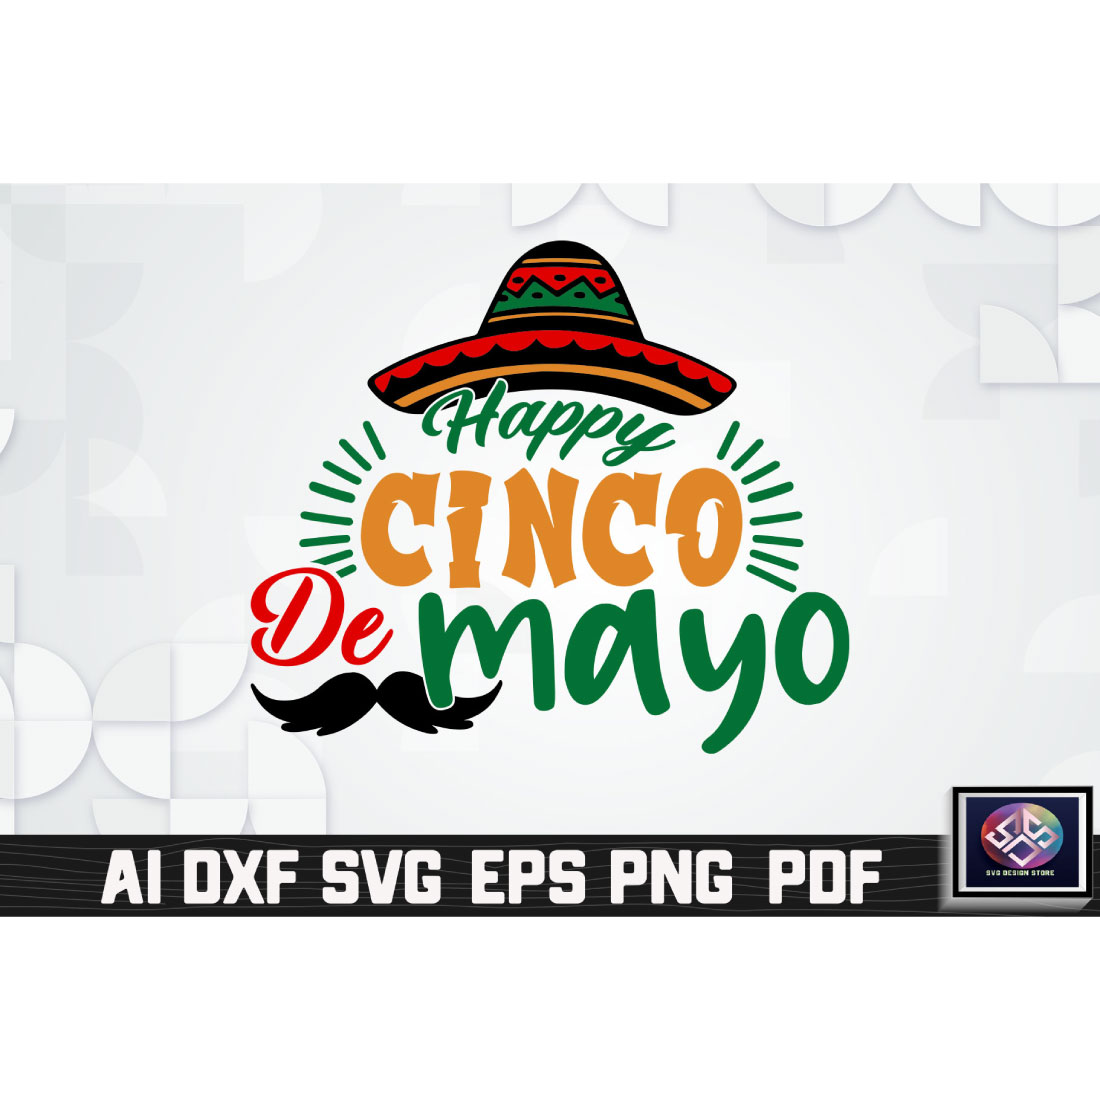 Happy Cinco De Mayo cover image.